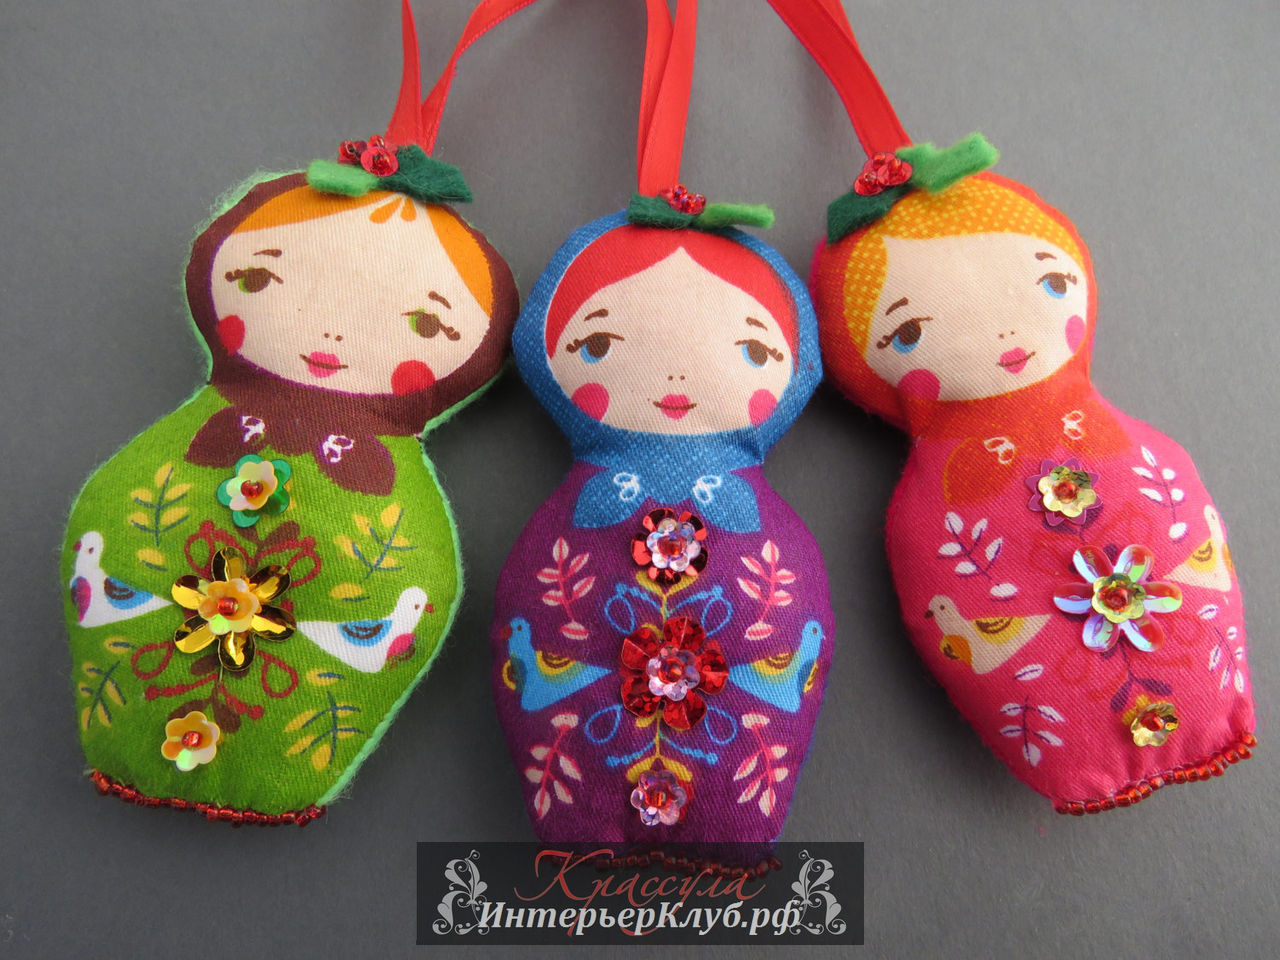 12 Украшение новогодней елки в русском стиле, елочные игрушки в русском стиле